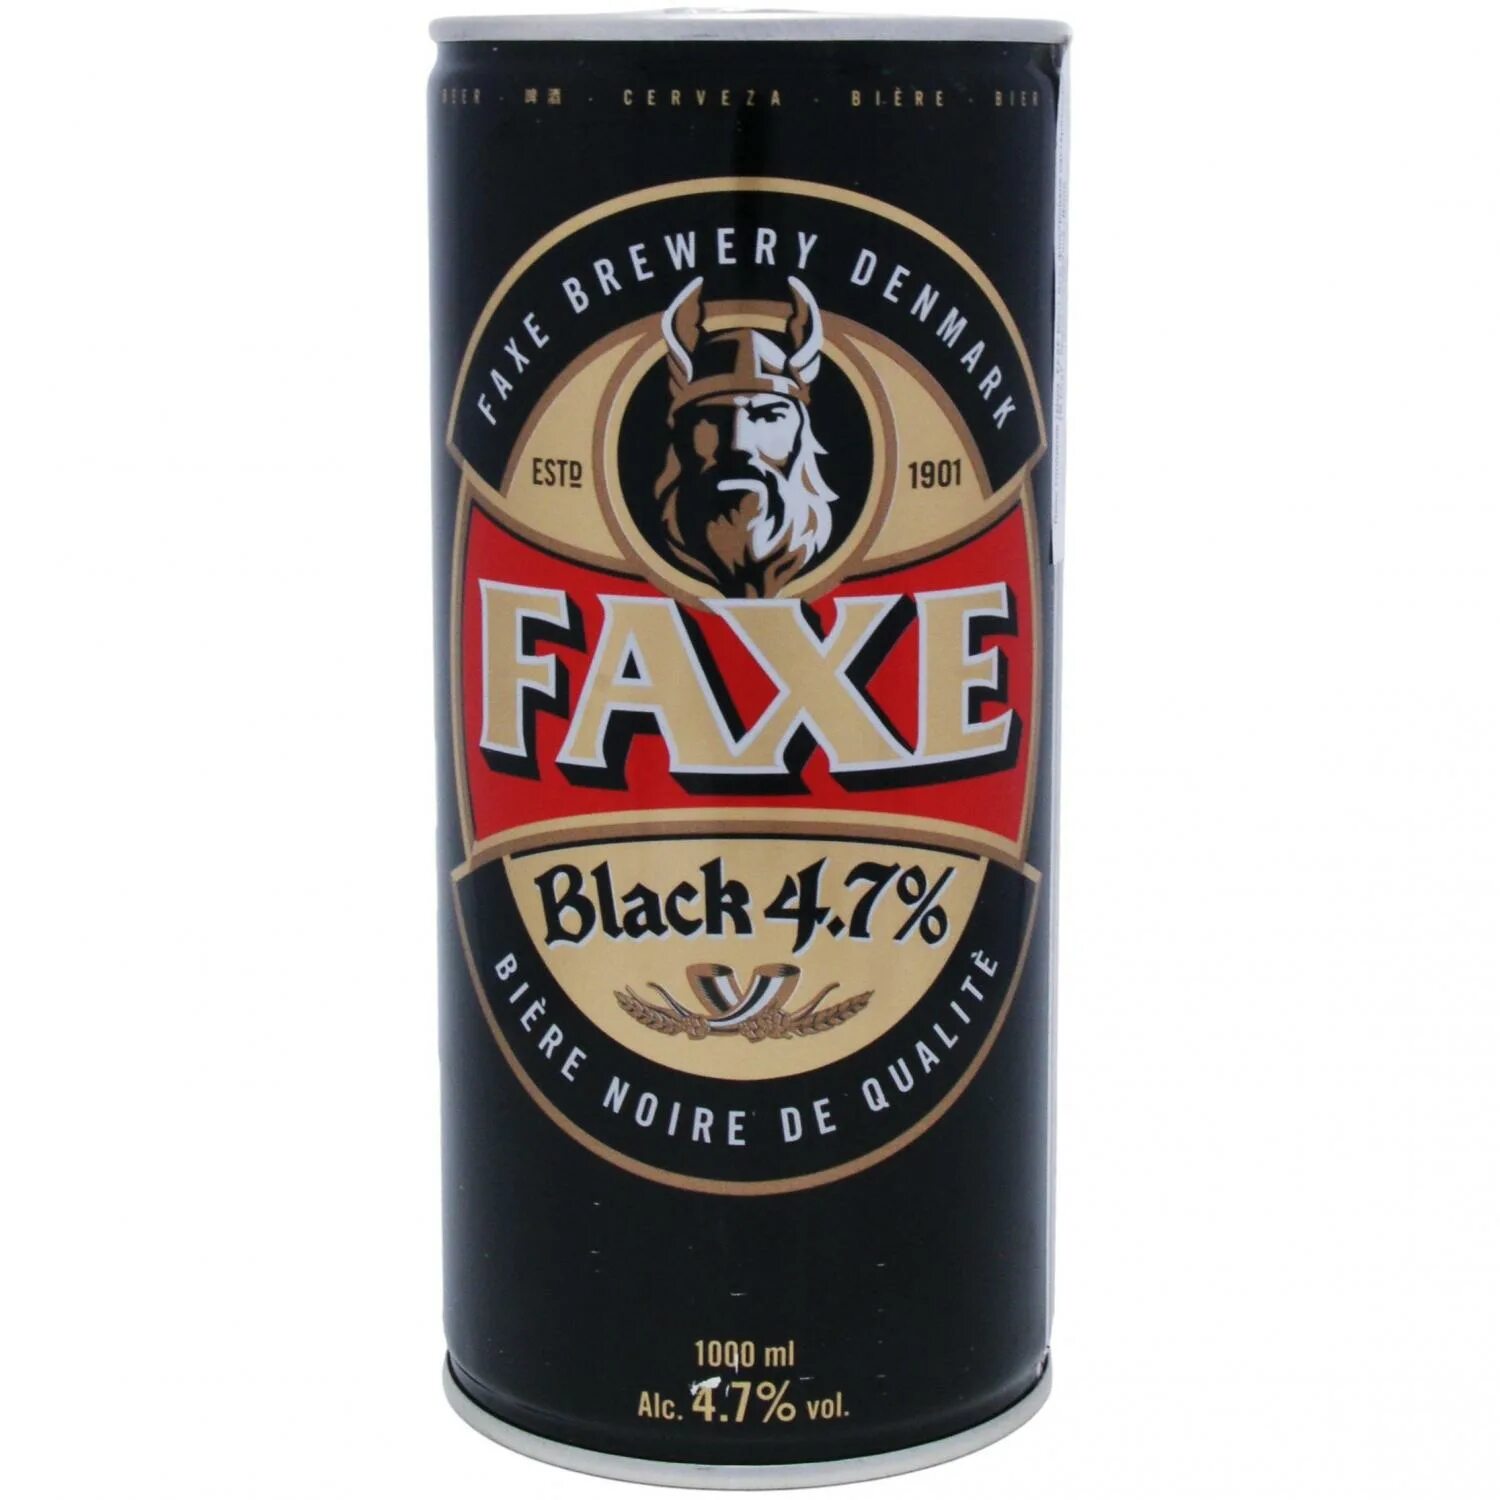 Faxe Black пиво. Faxe темное. Пиво факс темное. Пиво факс крепкое. Пиво факс